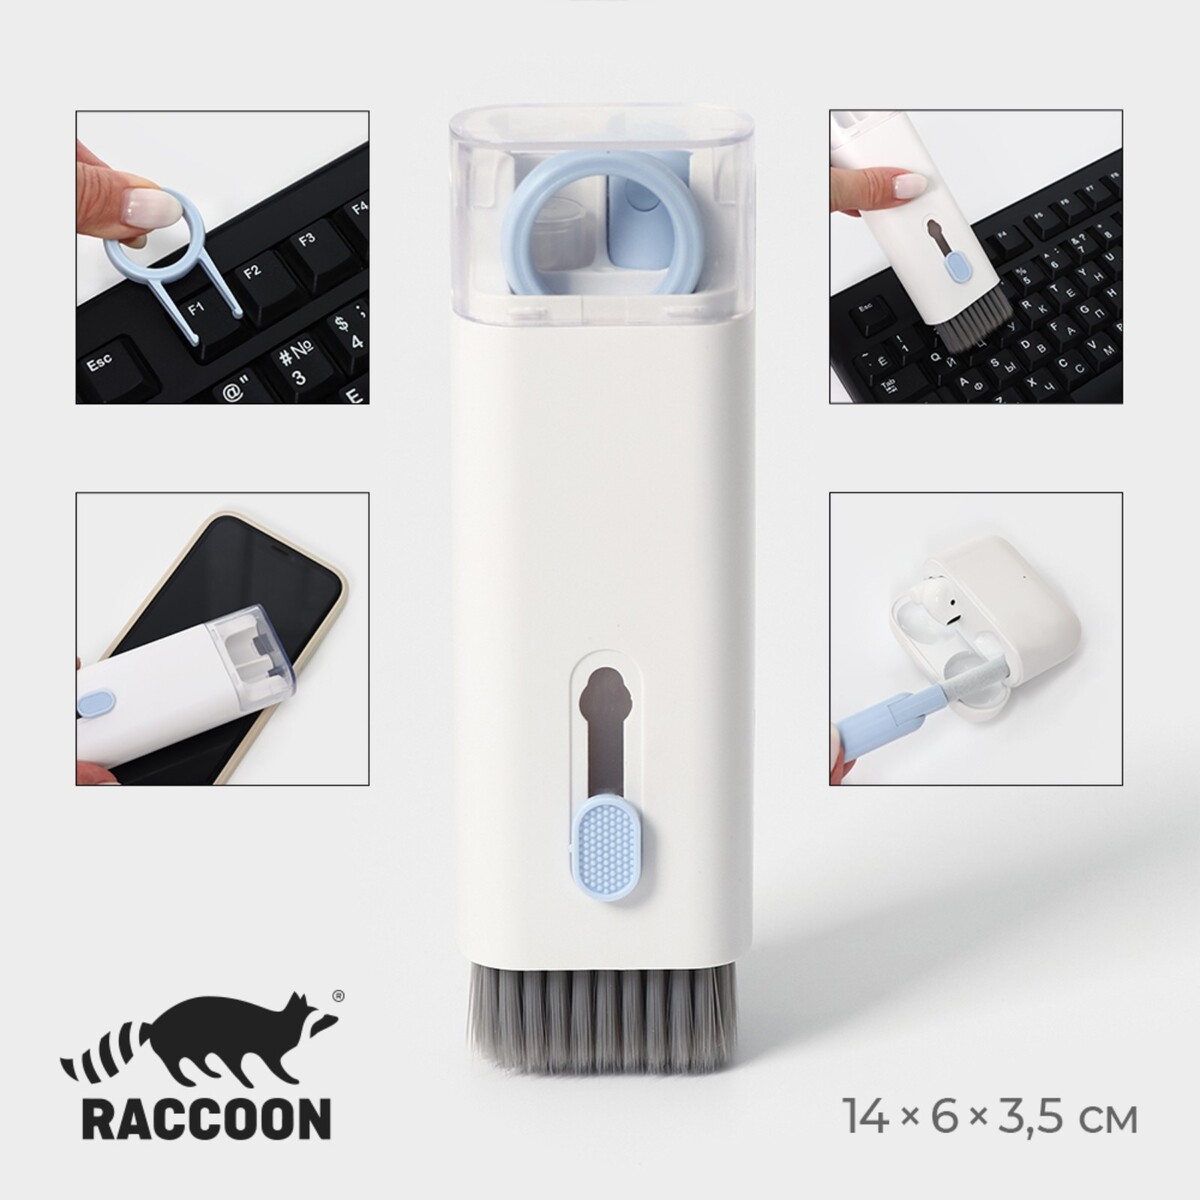 Мультифункциональный набор для чистки узких мест с распылителем и зажимом для клавиш raccoon, цвет белый набор пилок jas по пластику к ножу с цанговым зажимом 9 шт уп 48250